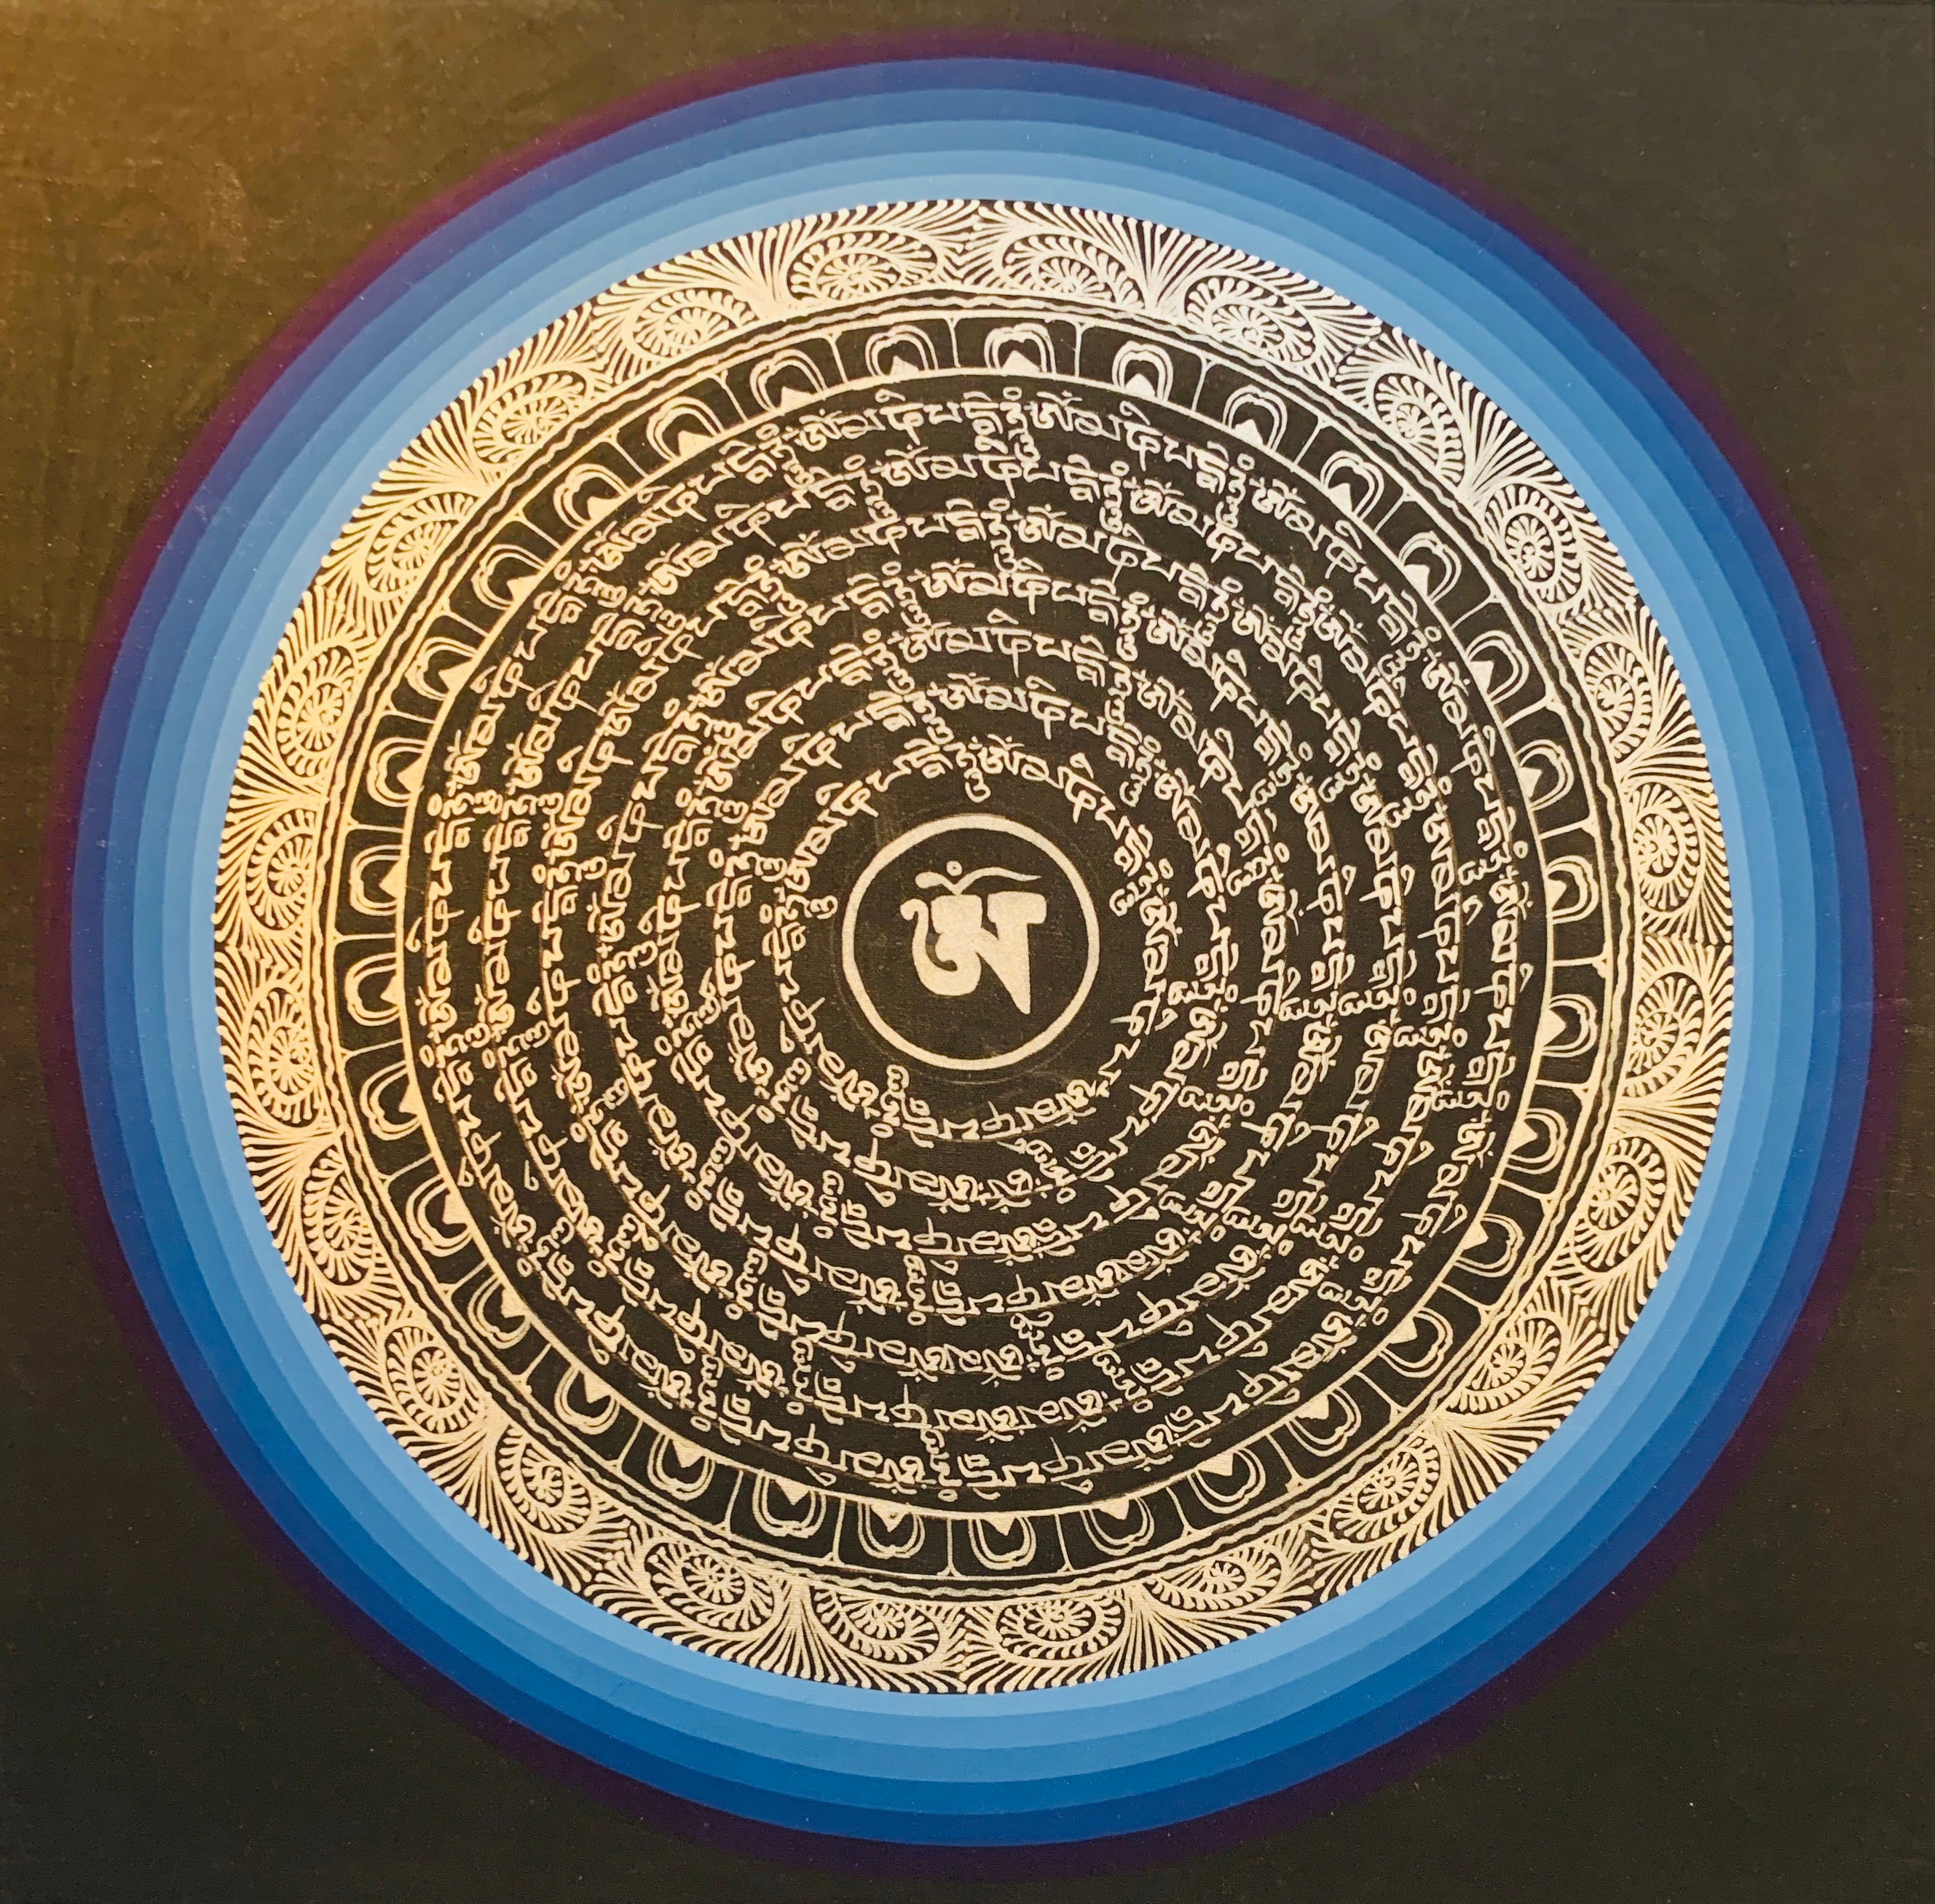 Mantra Mandala Thangka Painting 30*30 - The Thangka